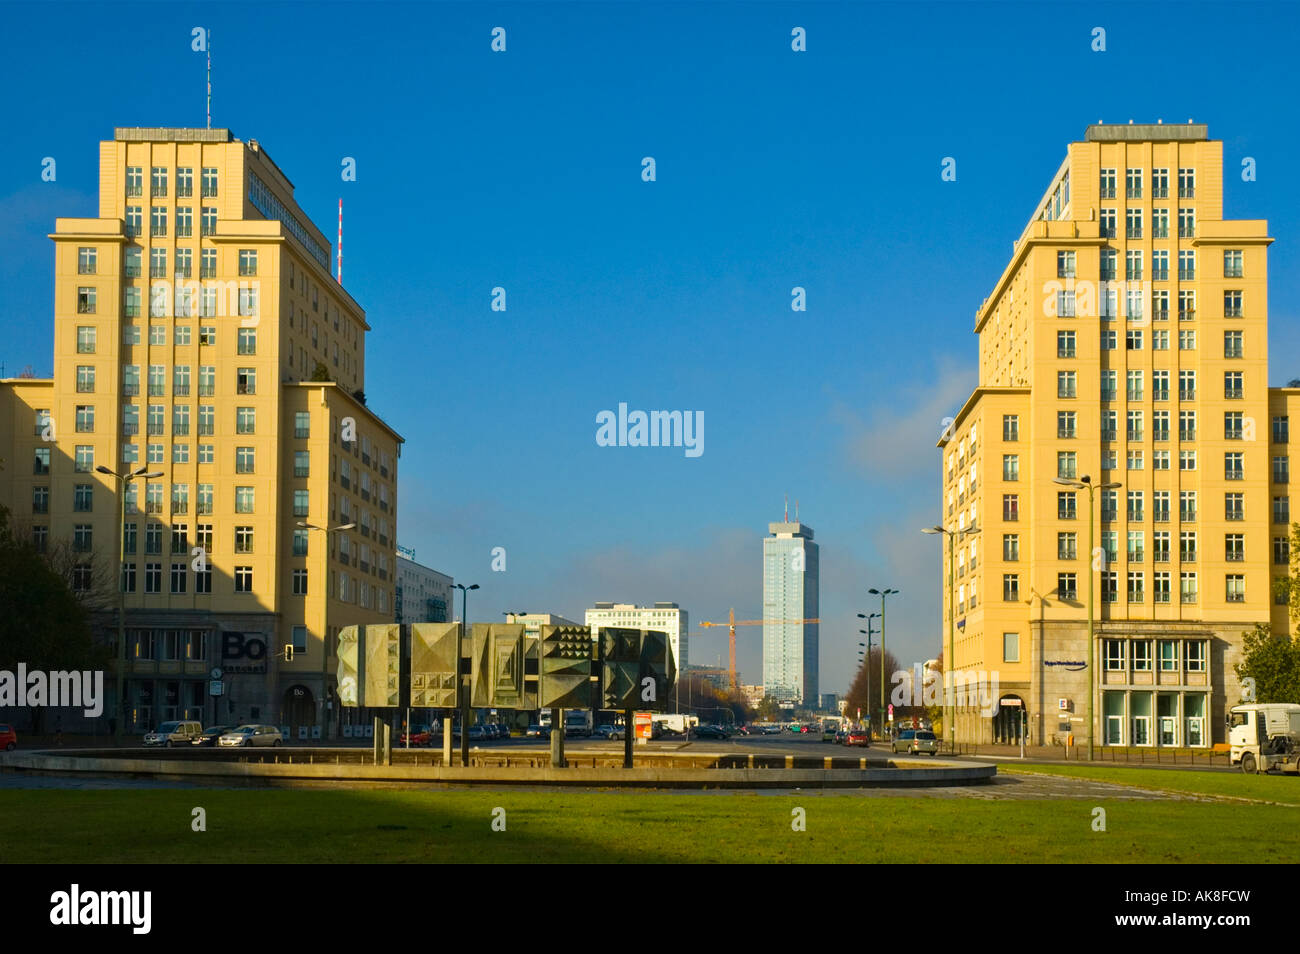 Straussberger Platz, Karl Marx Allee, Friedrichshain, east Berlin, Germany Stock Photo